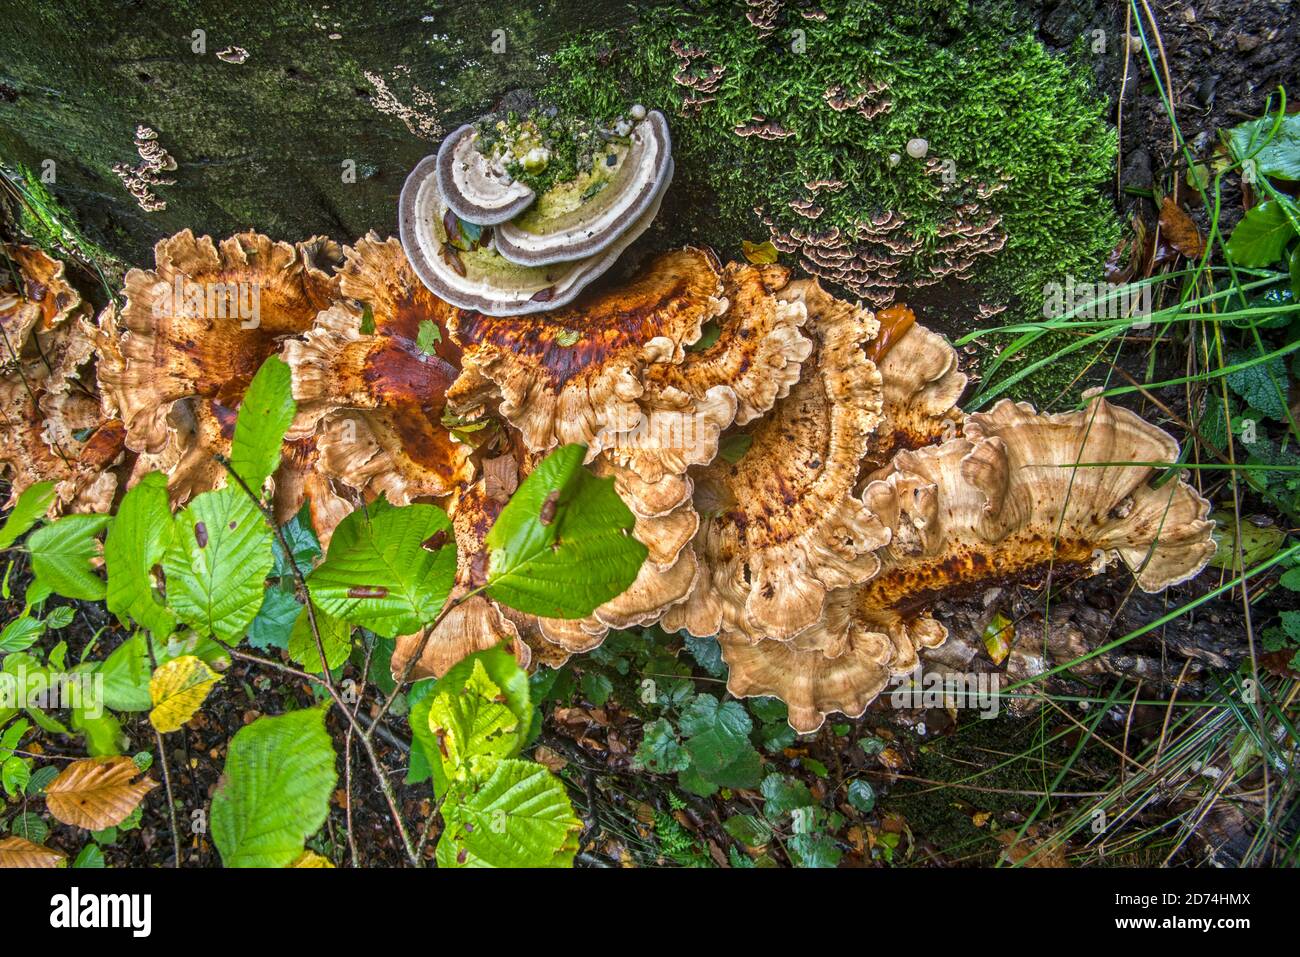 Giant-Polypore / schwarz färbende Polypore (Meripilus giganteus) Und Trameten Pilze wachsen an der Basis des Baumstammes in Herbstwald Stockfoto